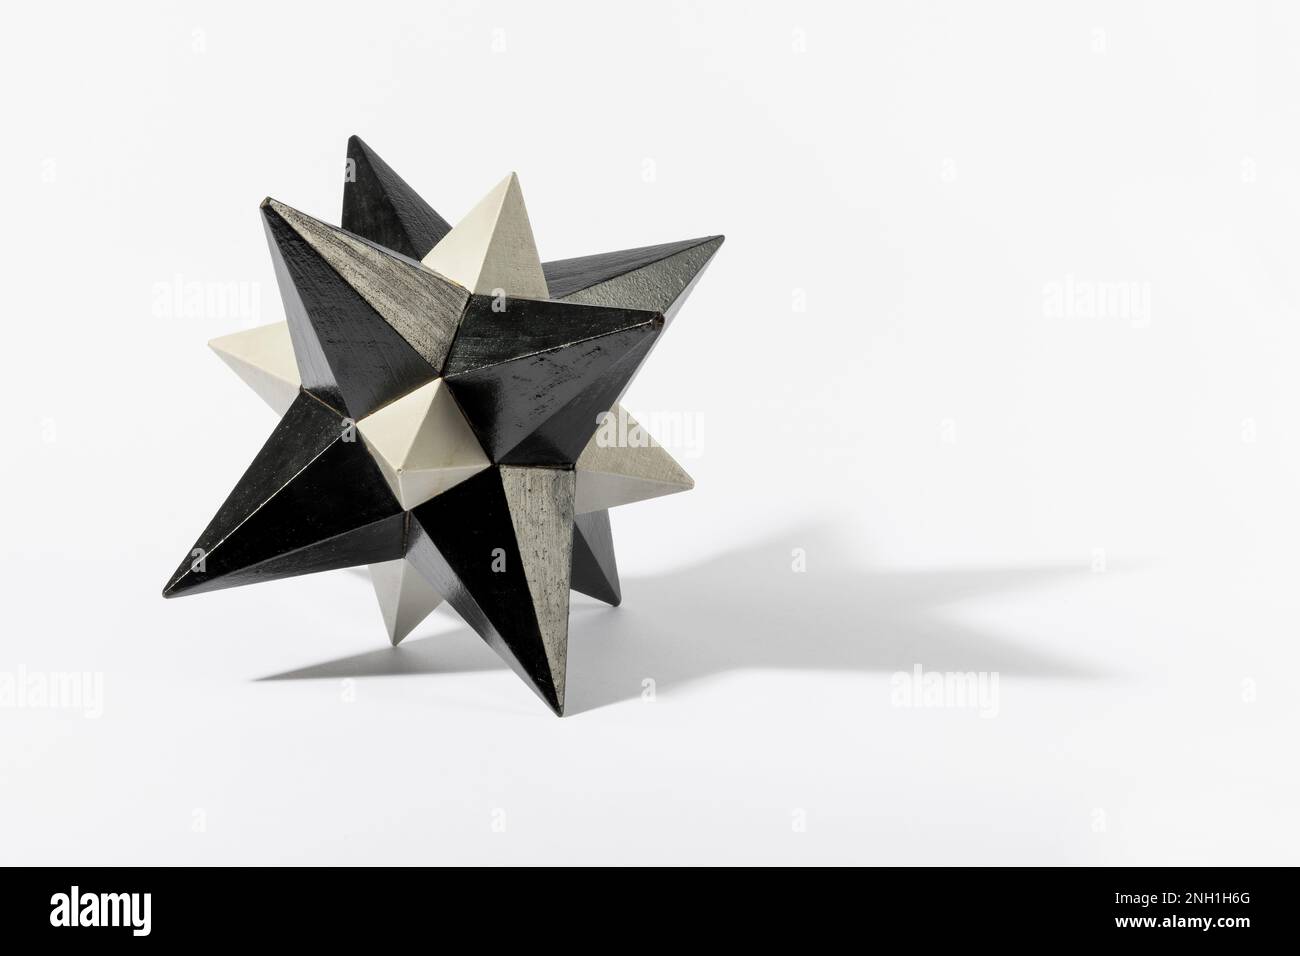 Le dodécaèdre stellaire de couleur grise avec des extrémités pointues qui jettent l'ombre sur un arrière-plan blanc Banque D'Images